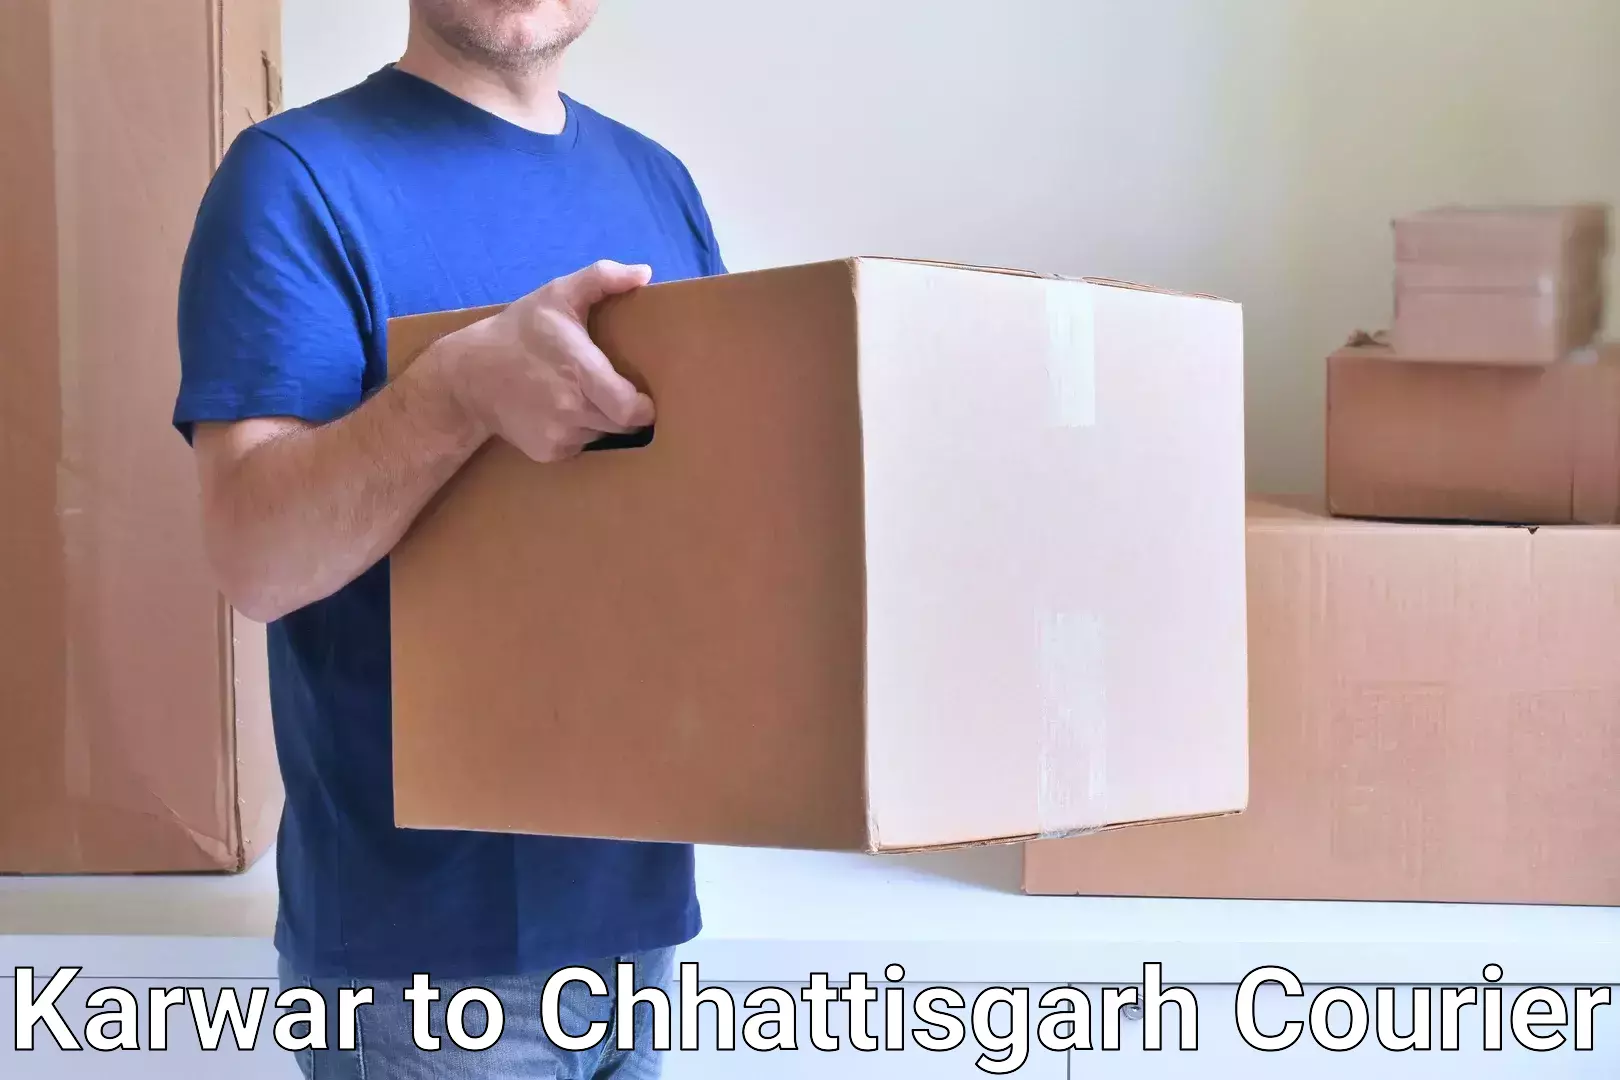 Efficient courier operations Karwar to Chhattisgarh